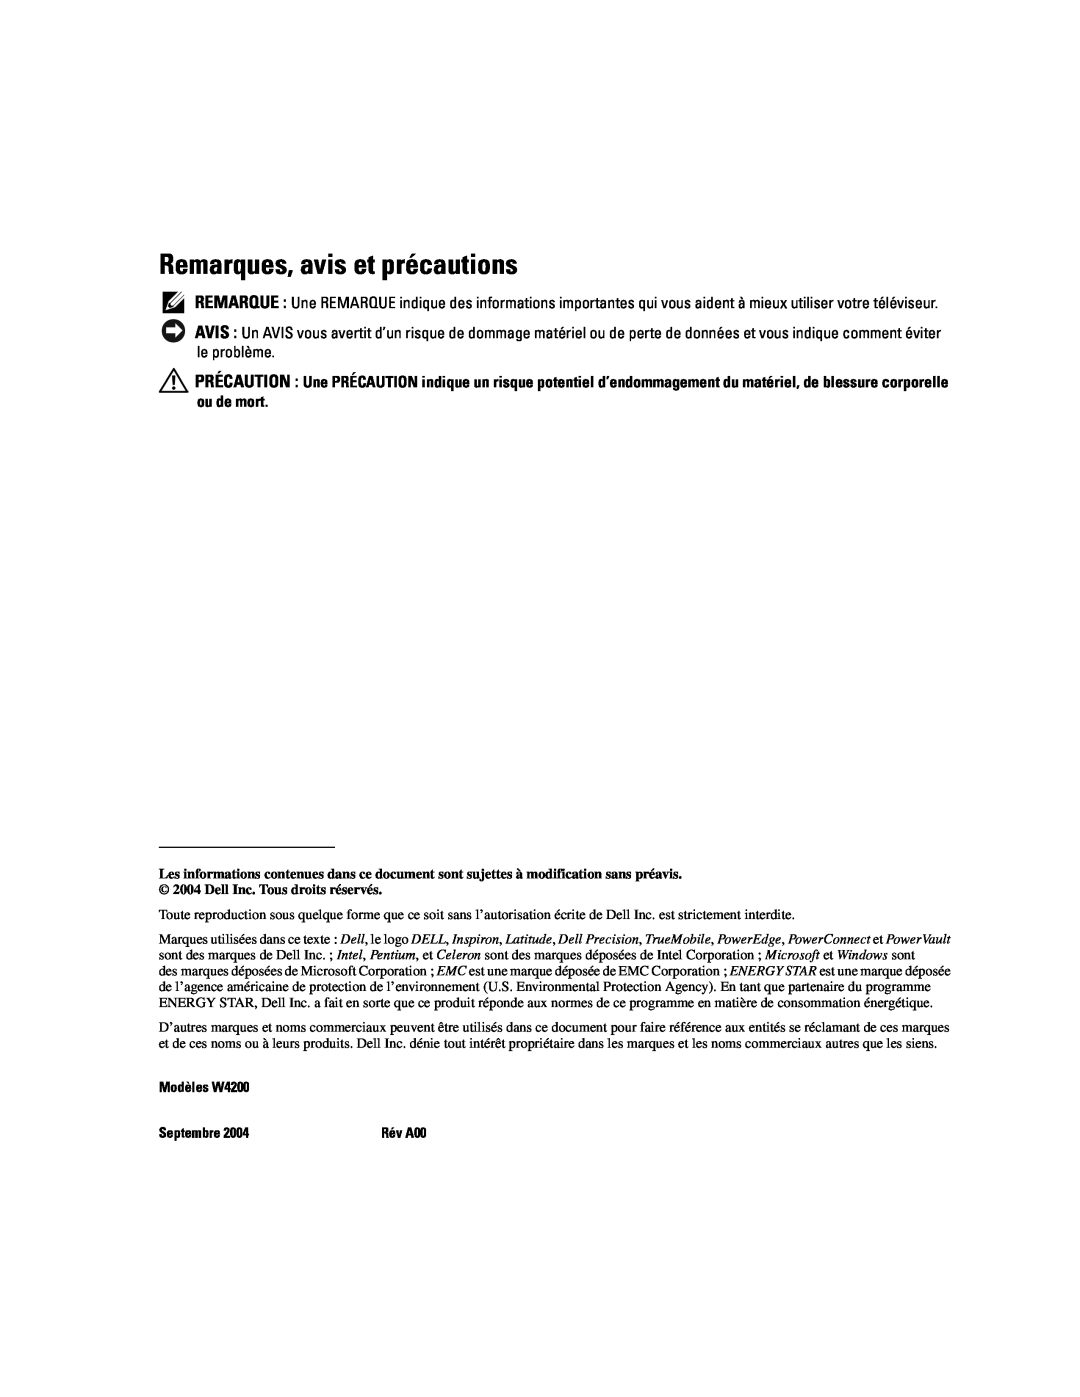 Dell manual Remarques, avis et précautions, Modèles W4200, Septembre 